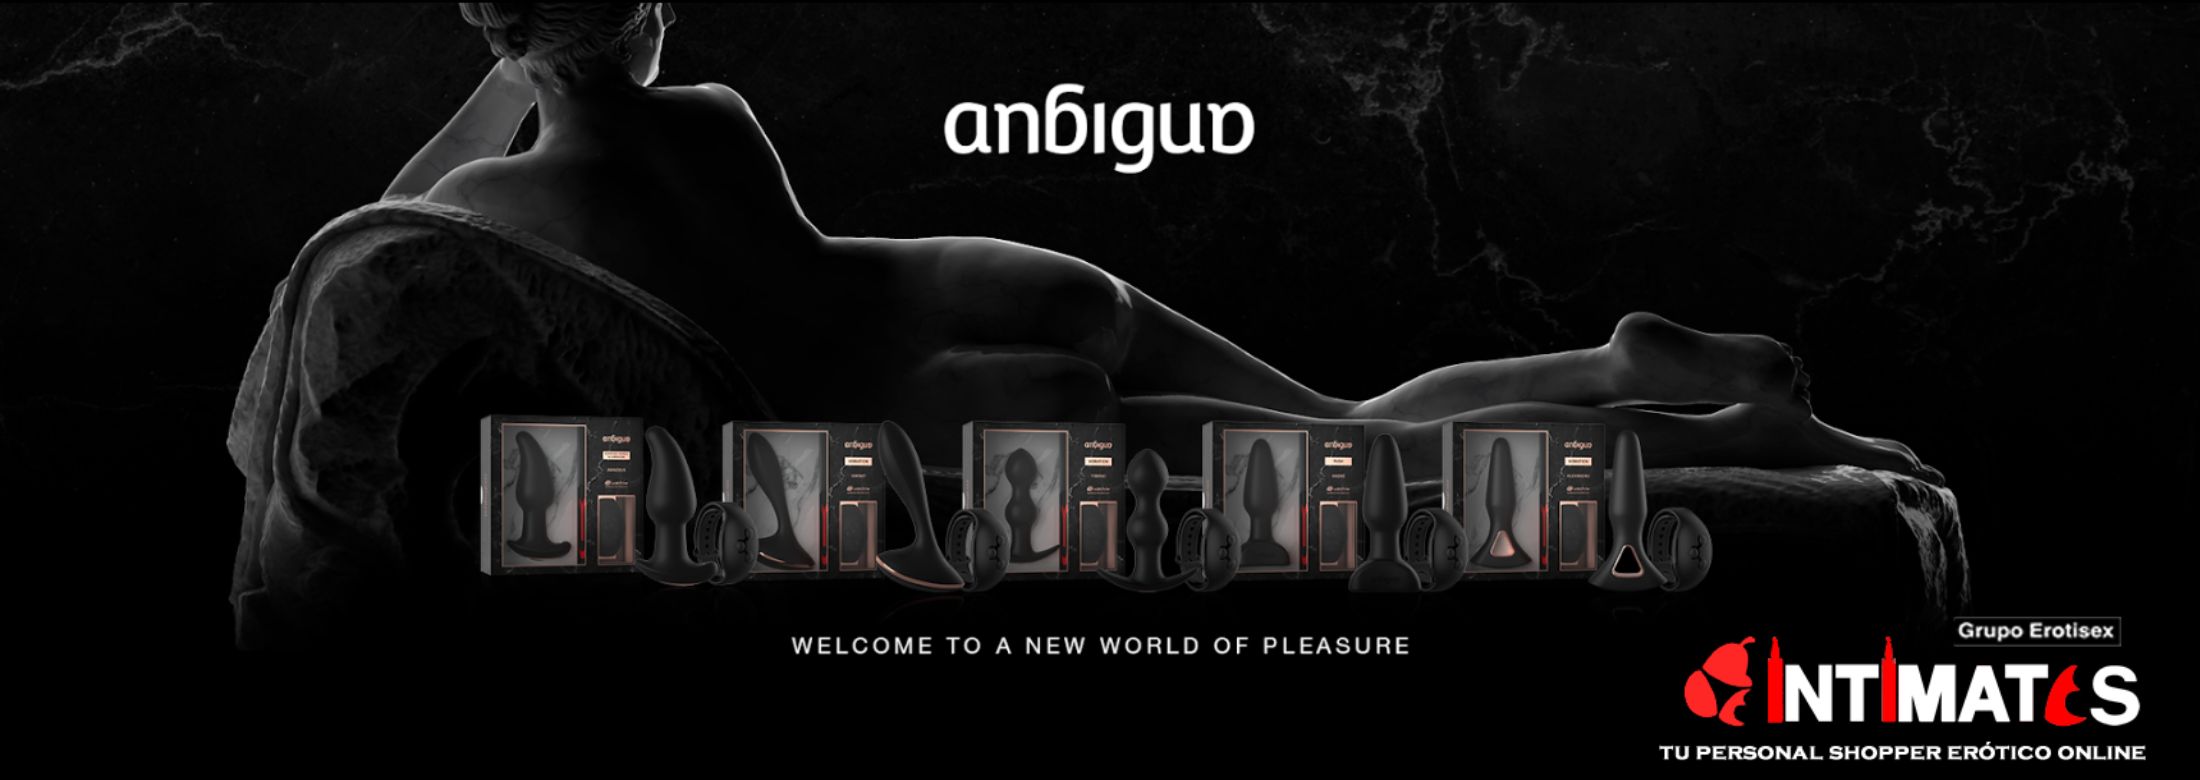 Los Juguetes eróticos de la marca Anbiguo incluyen la tecnología Watchme, con el reloj incluido y listos para usar con el control remoto o sin el, juguetes eróticos, que puedes adquirir en intimates.es "Tu Personal Shopper Erótico Online"